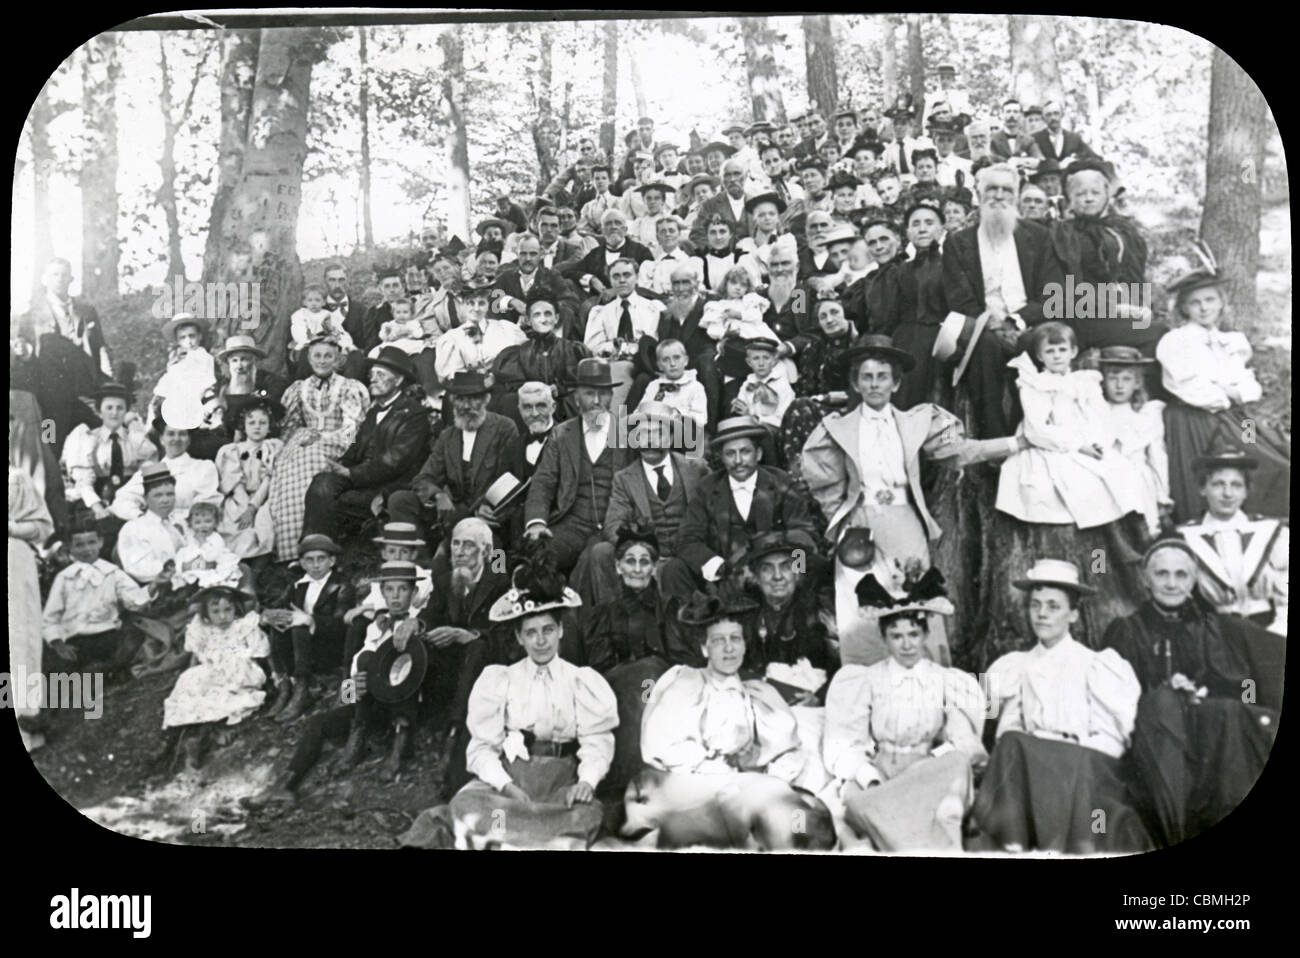 Um 1900 markiert Antik Foto Familie Picknick, Akron, Ohio, USA. Ursprüngliche Quelle Foto hat einen leichten Weichzeichner. Stockfoto